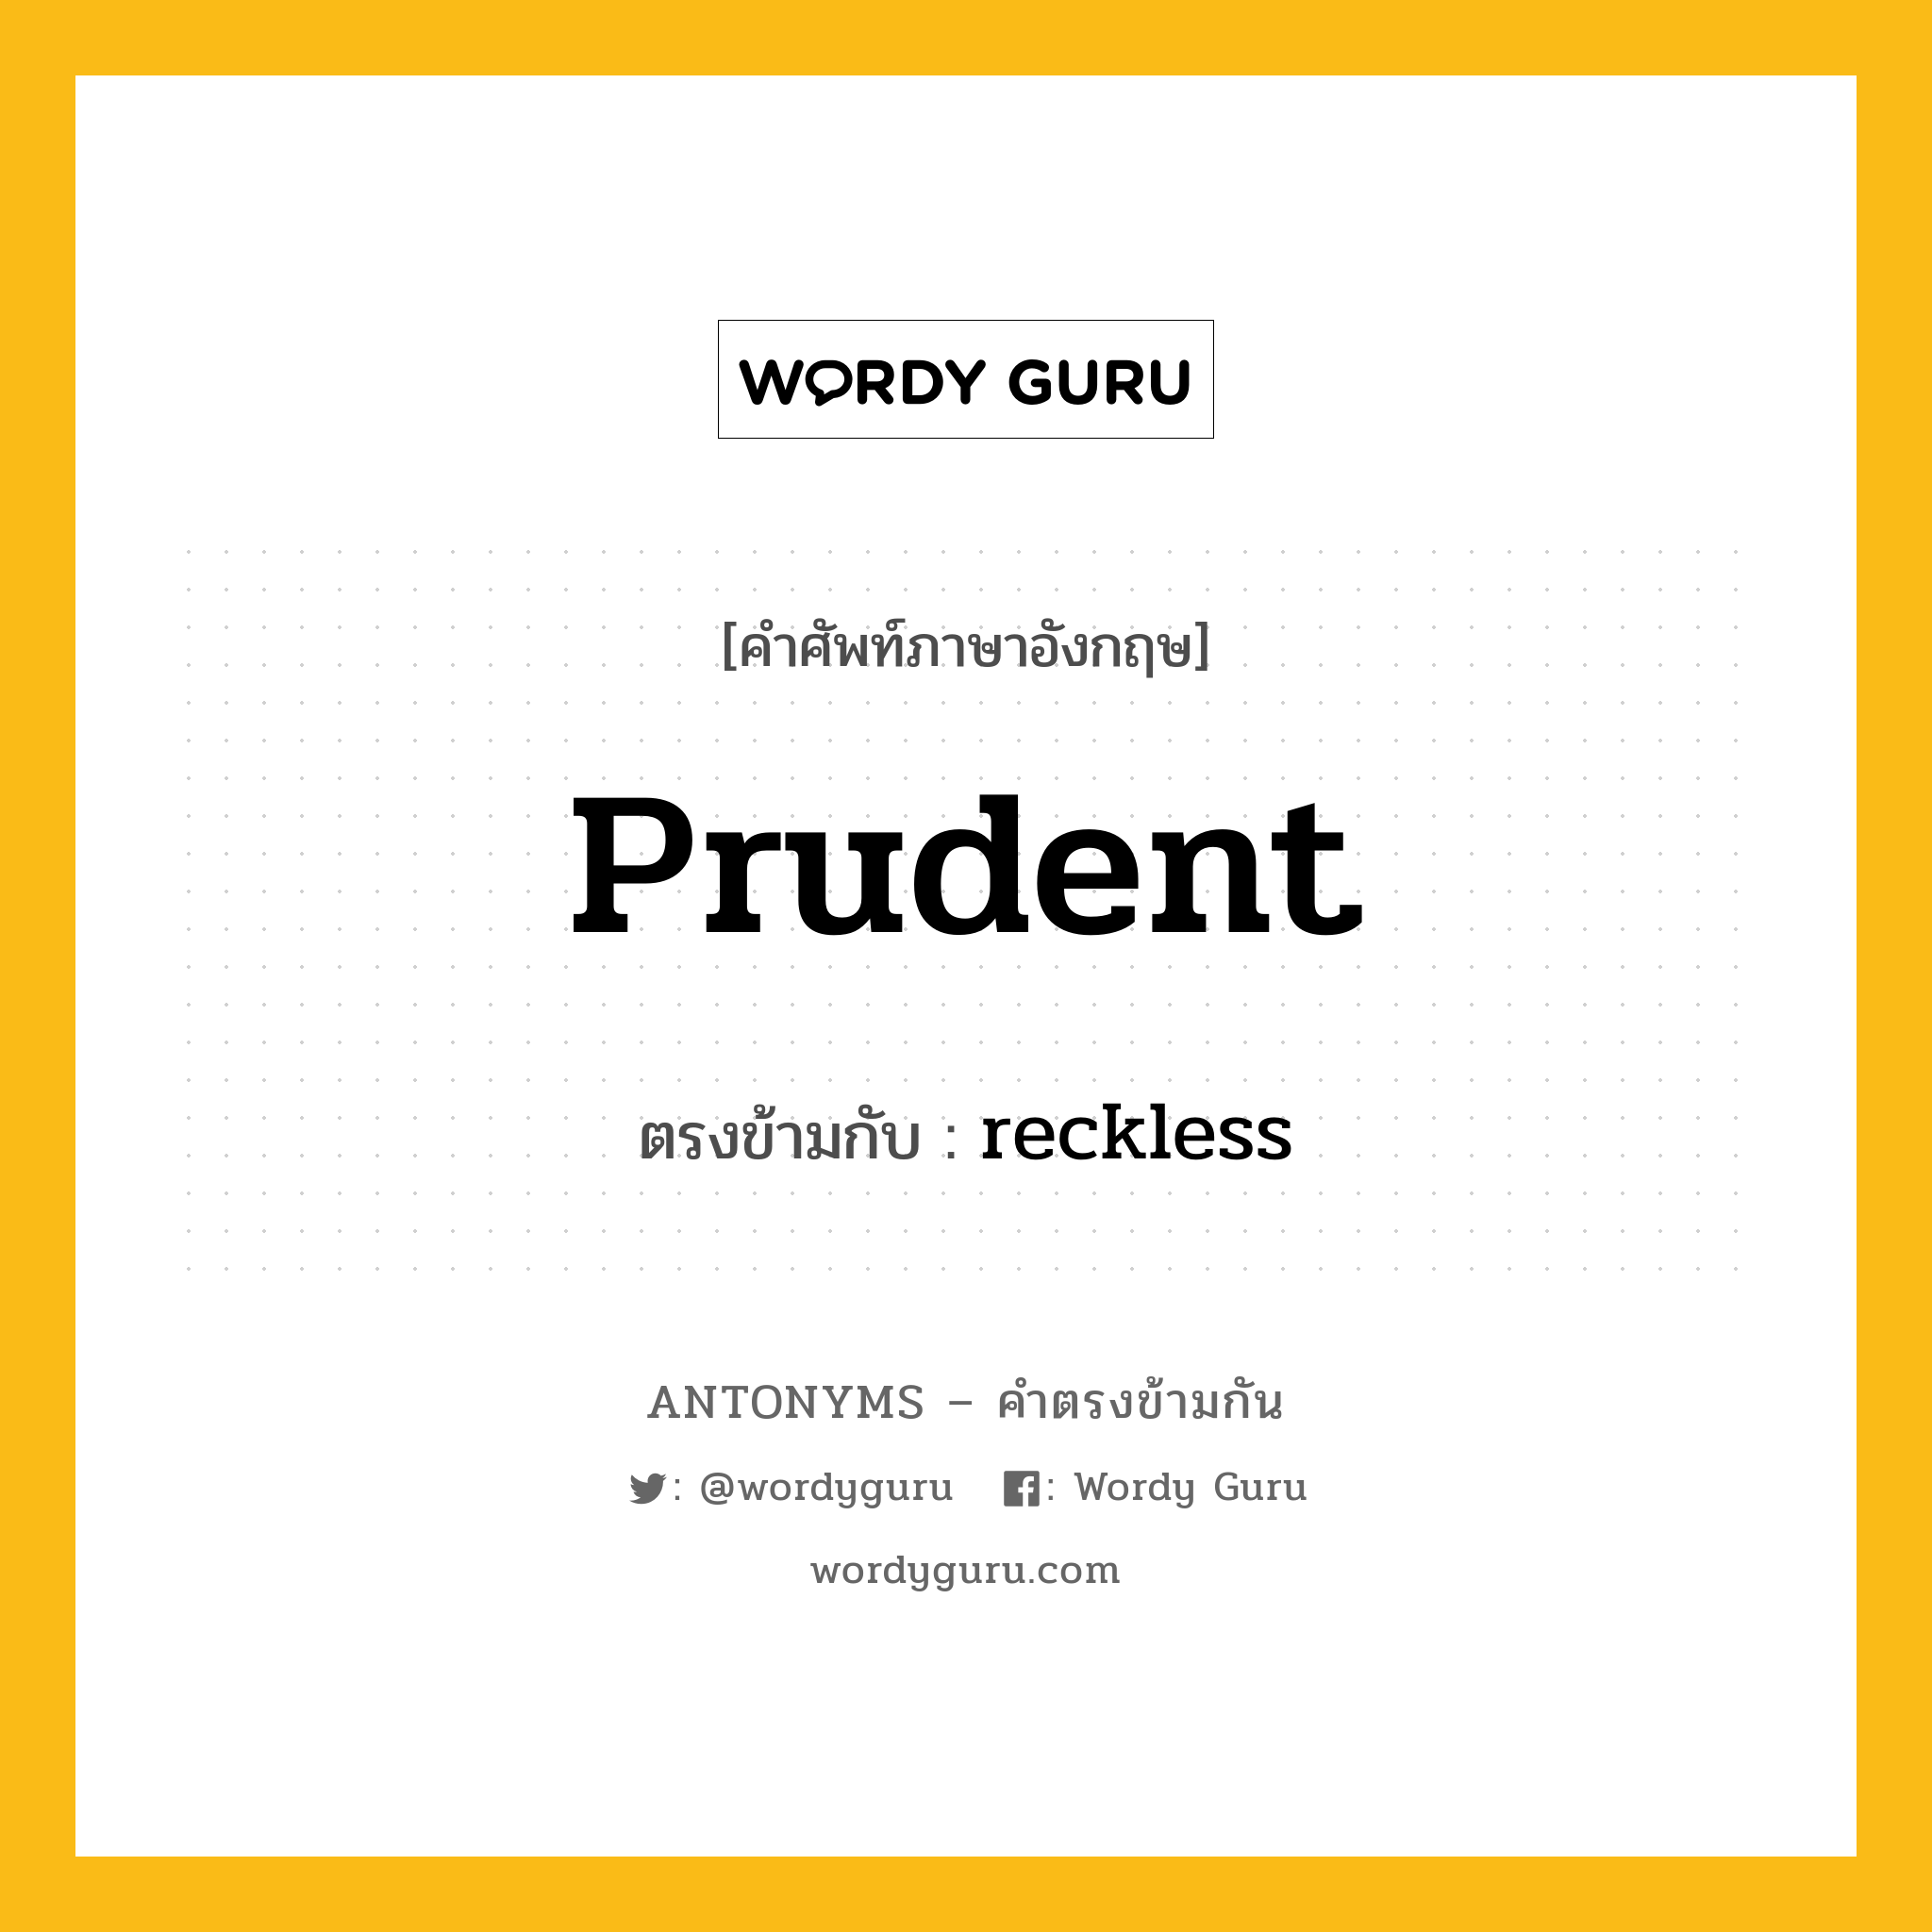 prudent เป็นคำตรงข้ามกับคำไหนบ้าง?, คำศัพท์ภาษาอังกฤษ prudent ตรงข้ามกับ reckless หมวด reckless